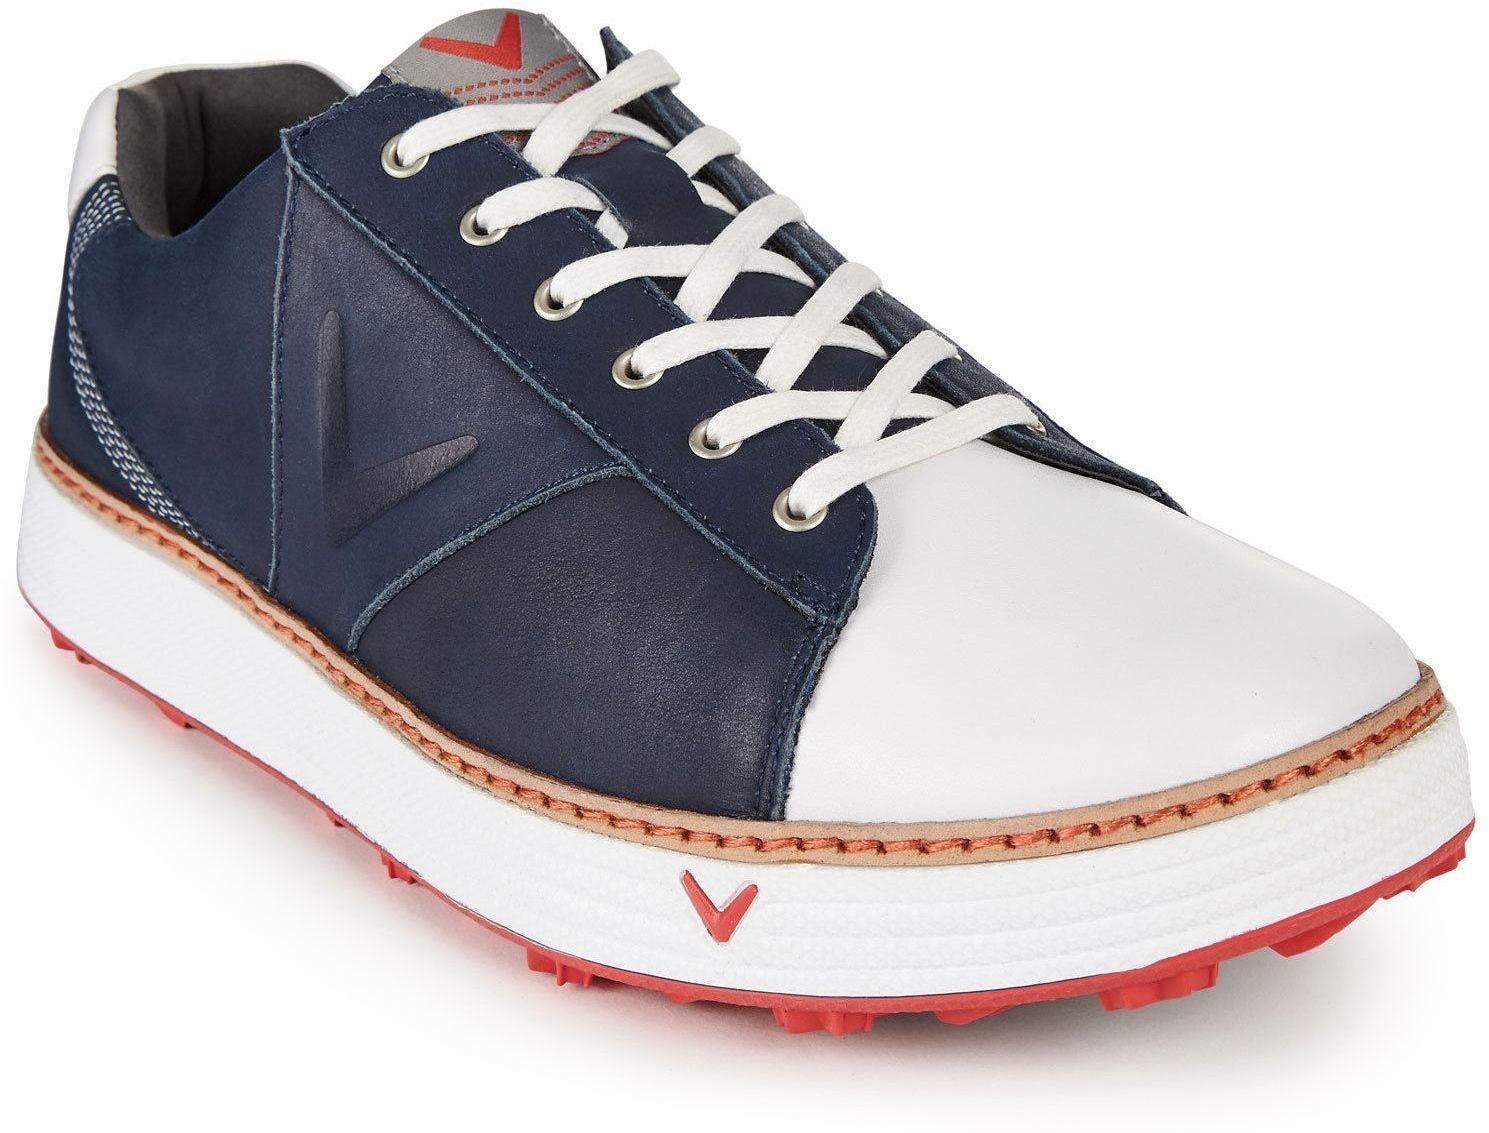 Chaussures de golf pour hommes Callaway Del Mar Retro Chaussures de Golf pour Hommes Navy/White UK 9,5